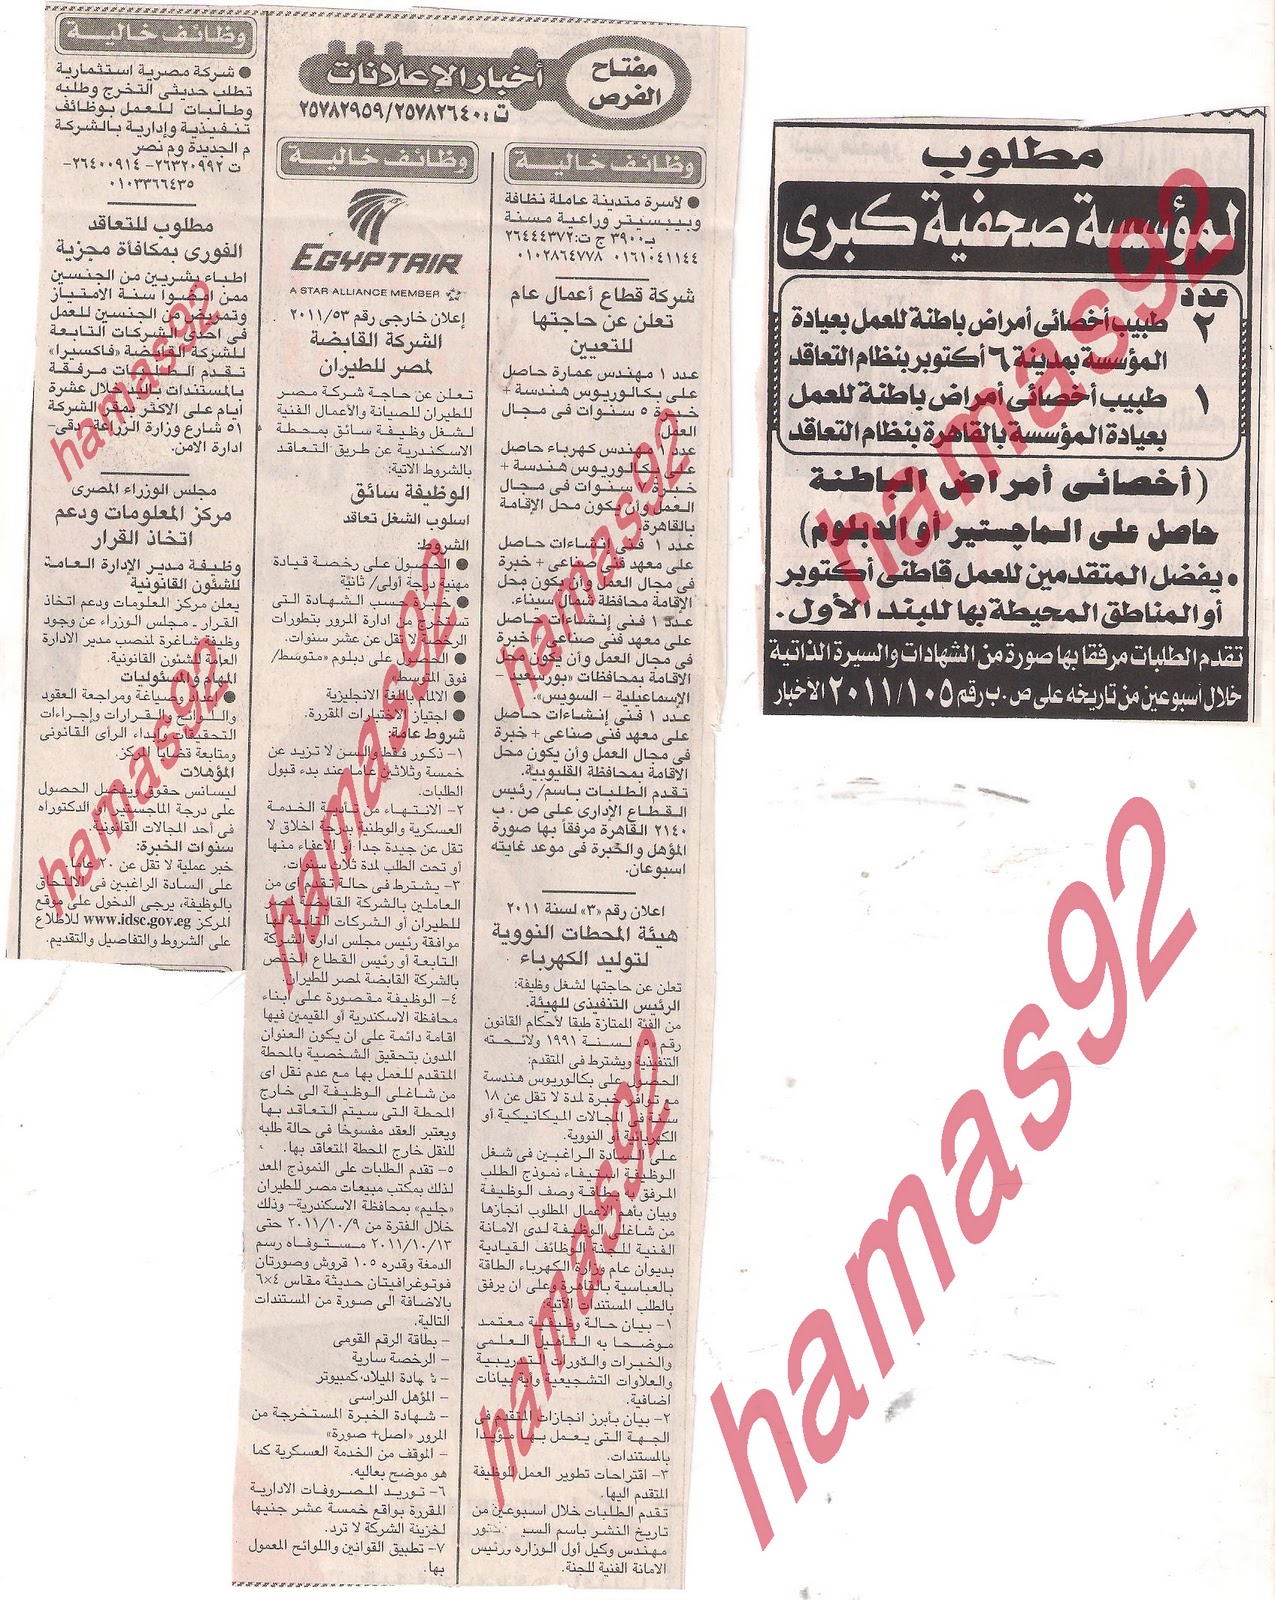 وظائف جريدة اخبار اليوم السبت 1/10/2011 Picture+002